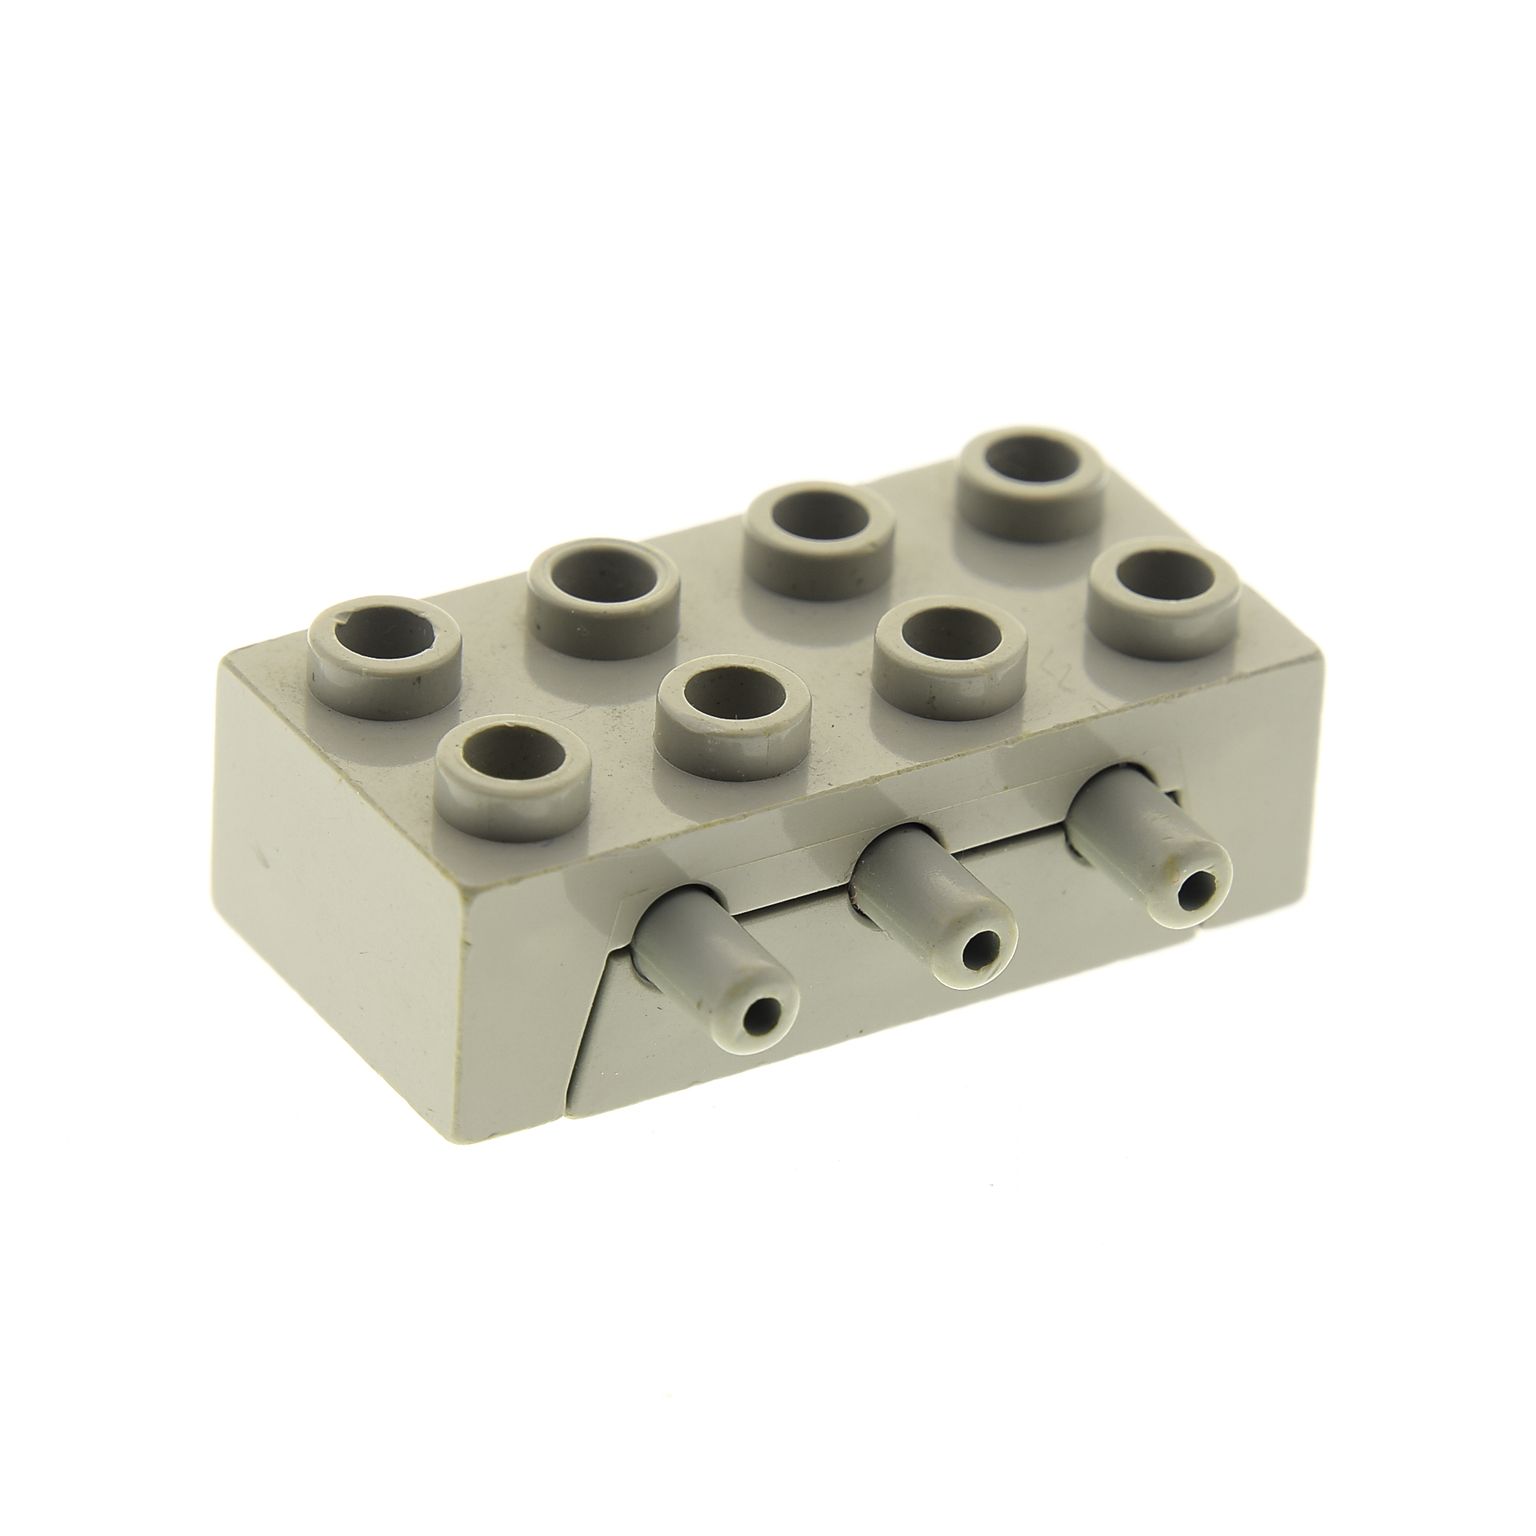 1 x Lego Technic Pneumatic Schalter Ventil alt-hell grau 3 Wege Umschaltventil S 